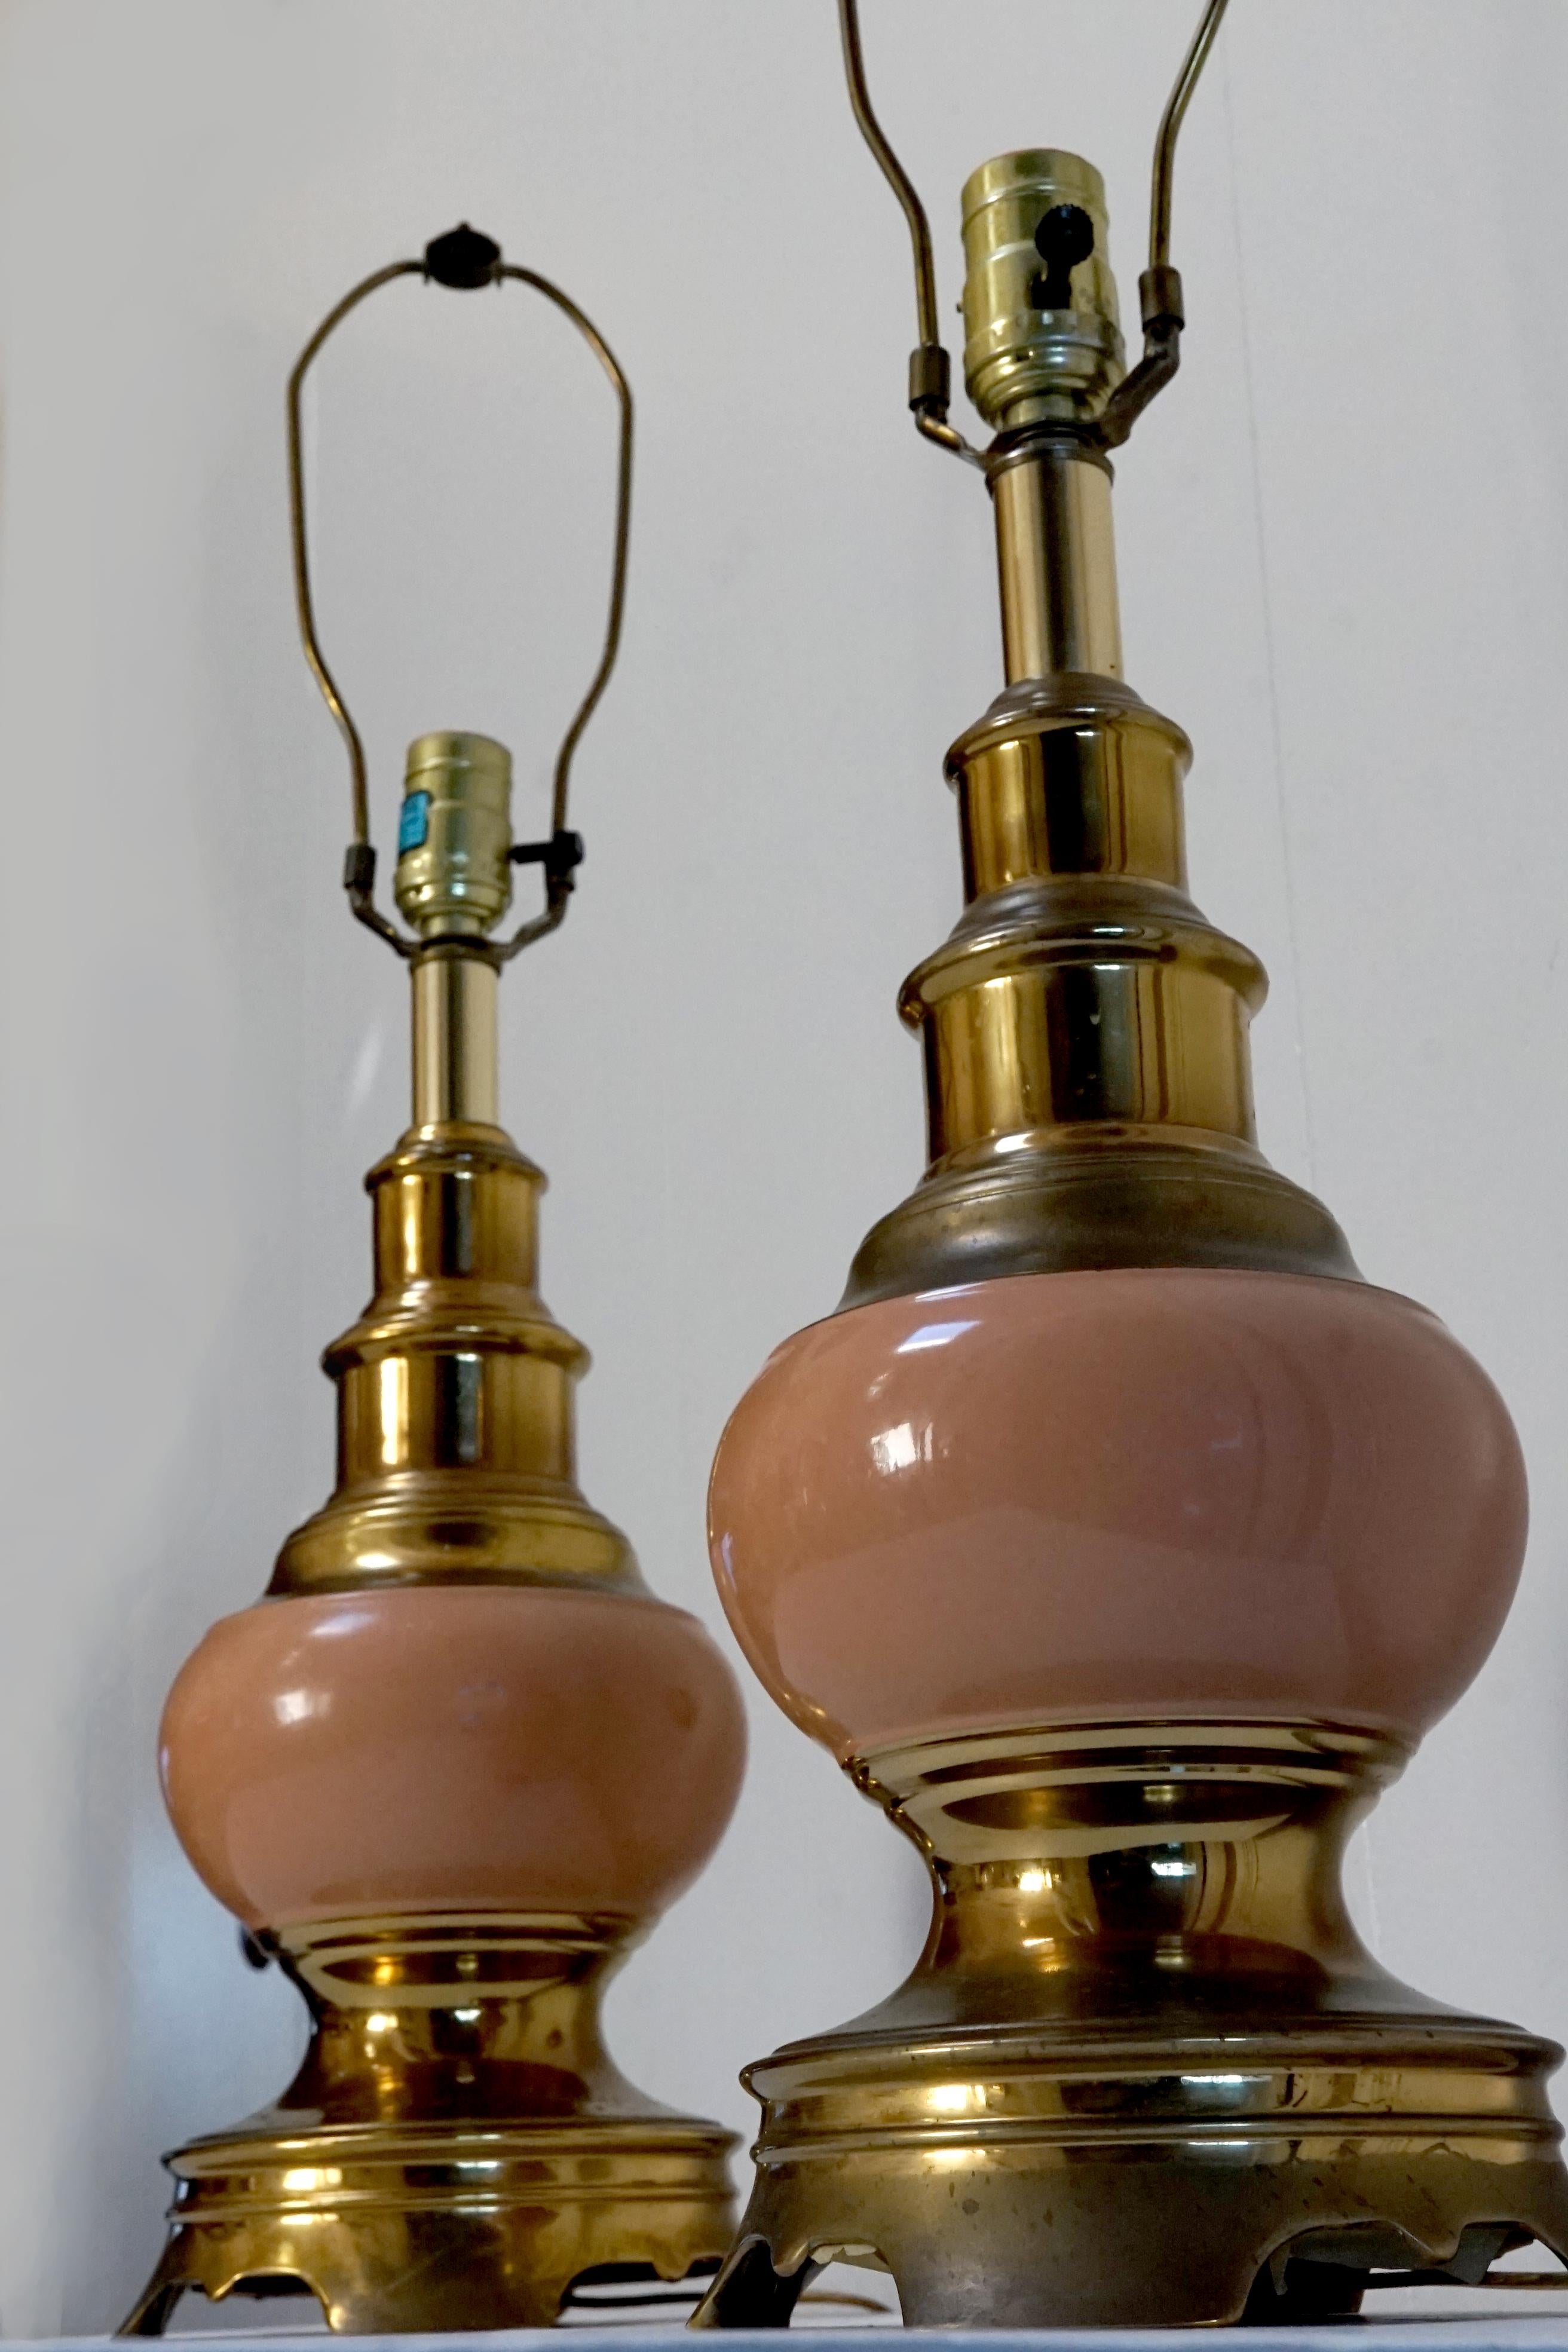 stiffel brass lamps